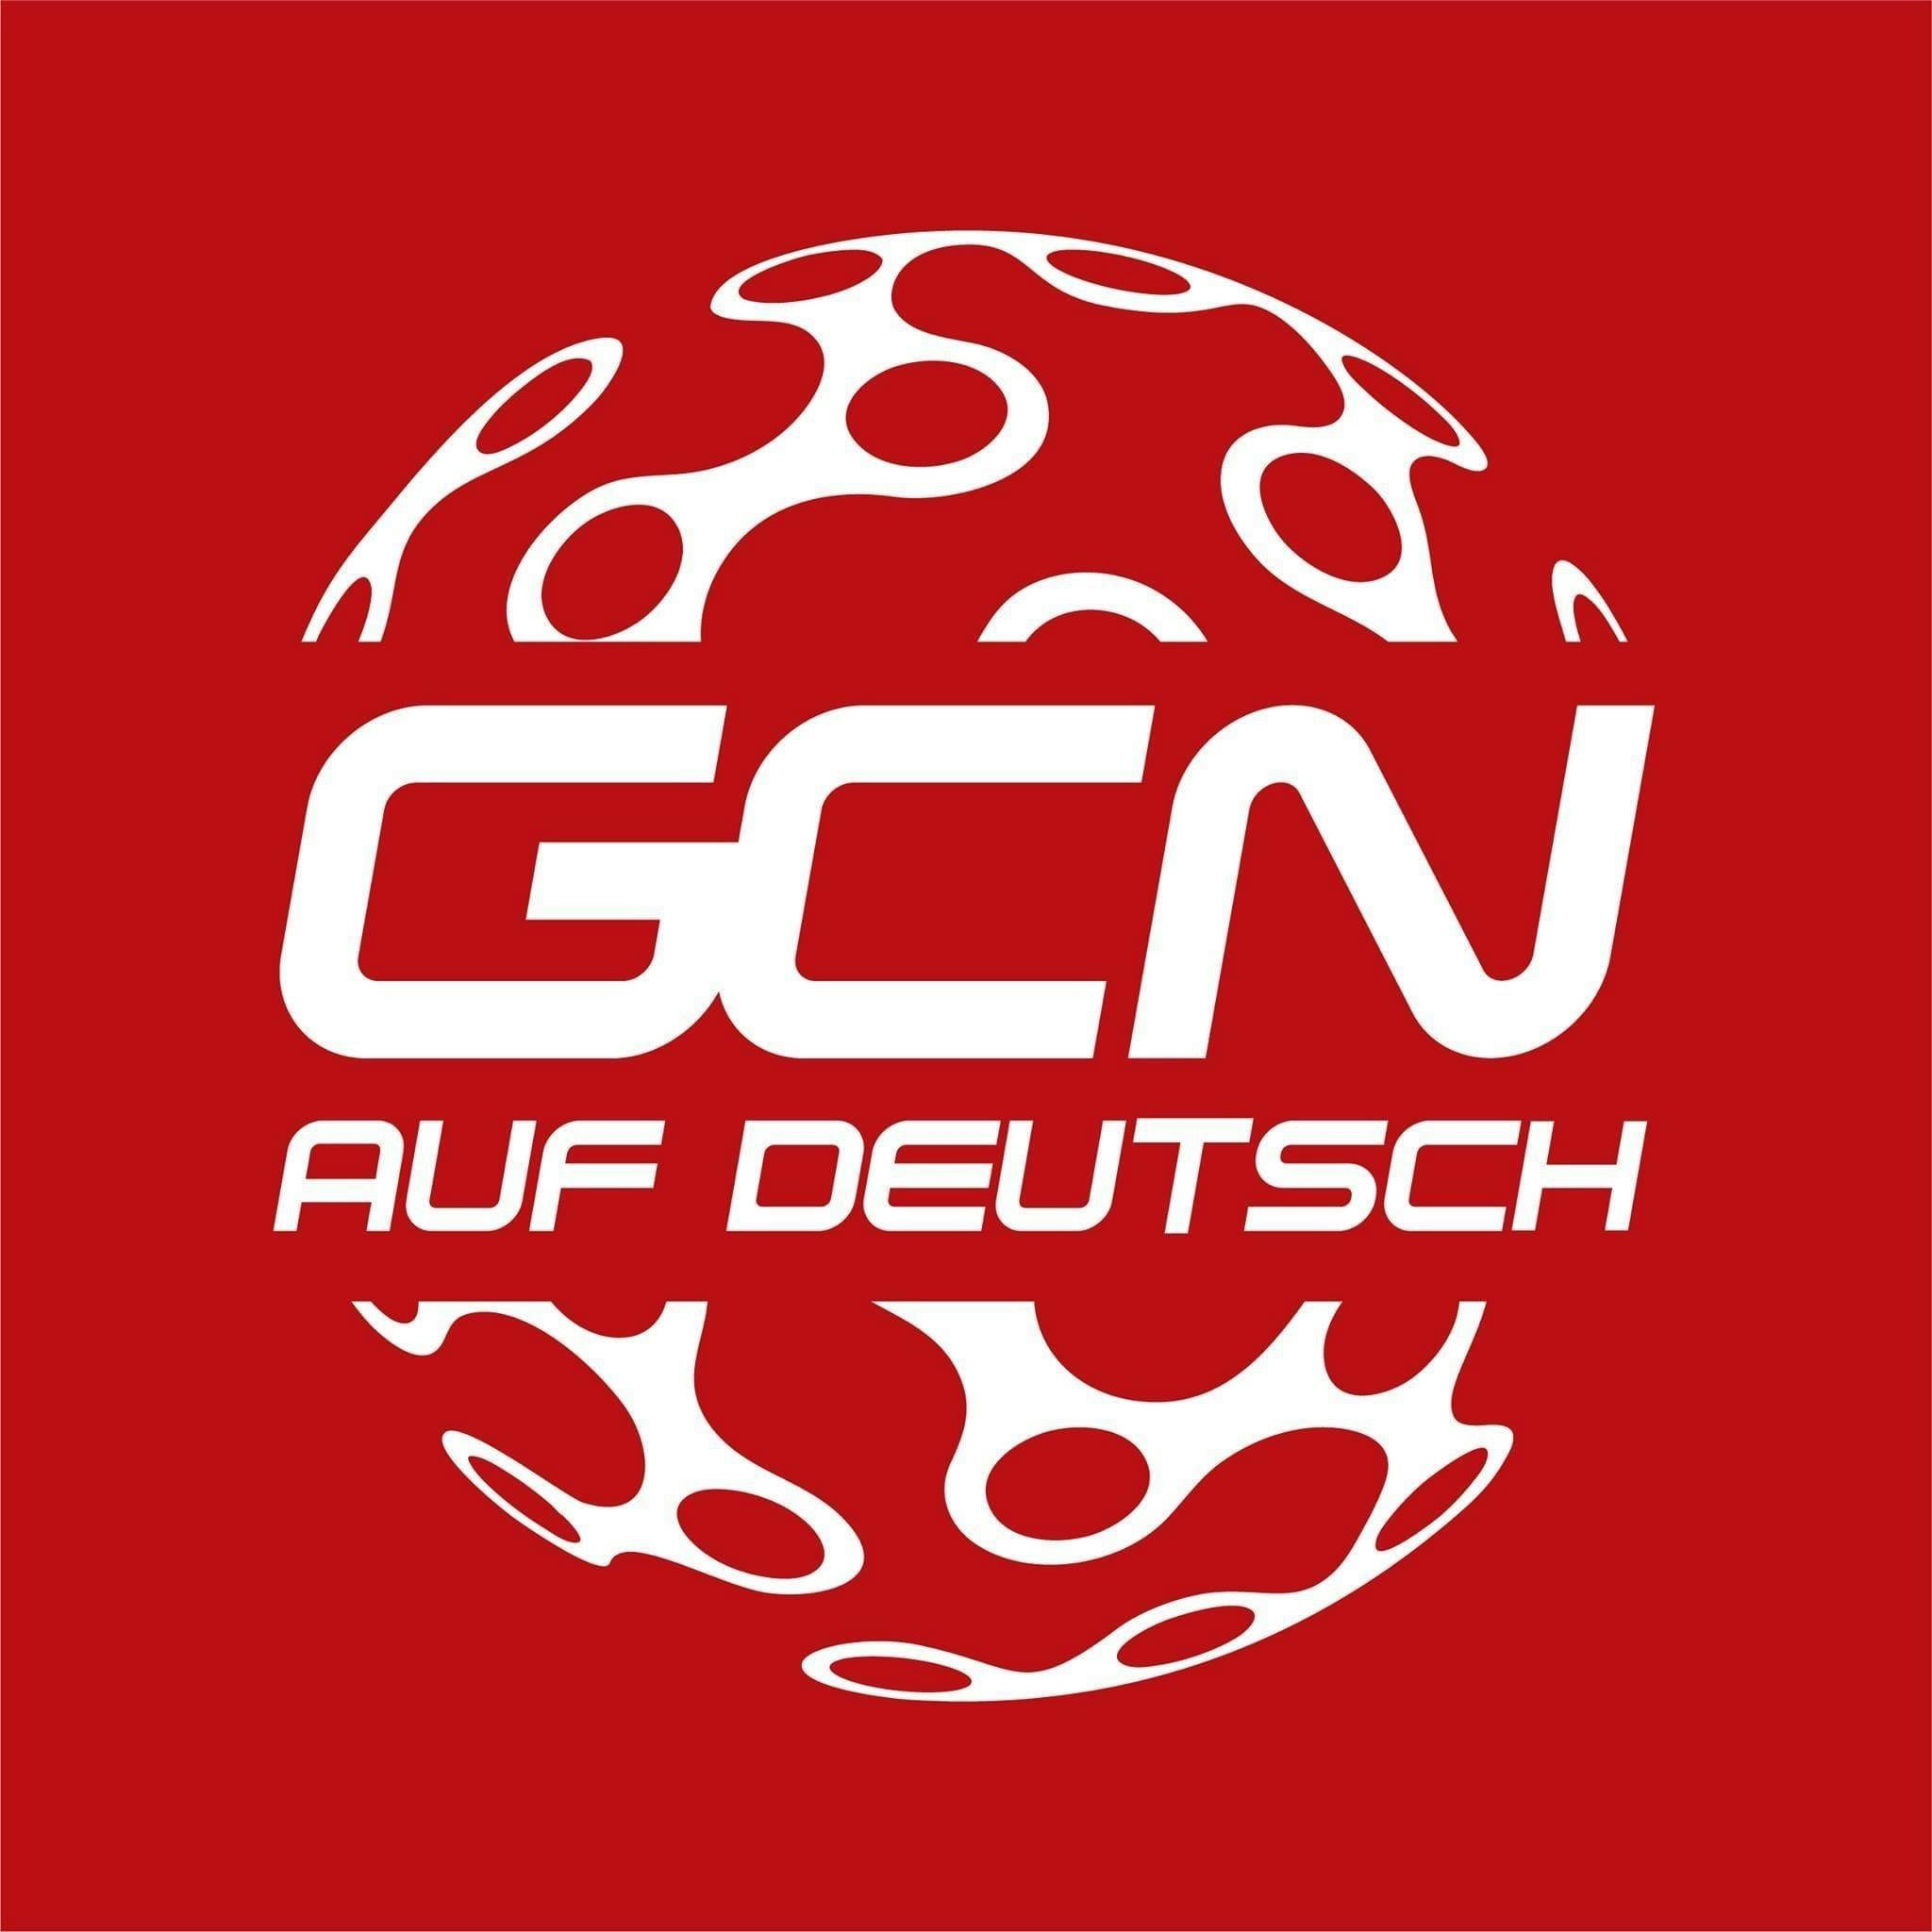 GCN auf Deutsch channel logo